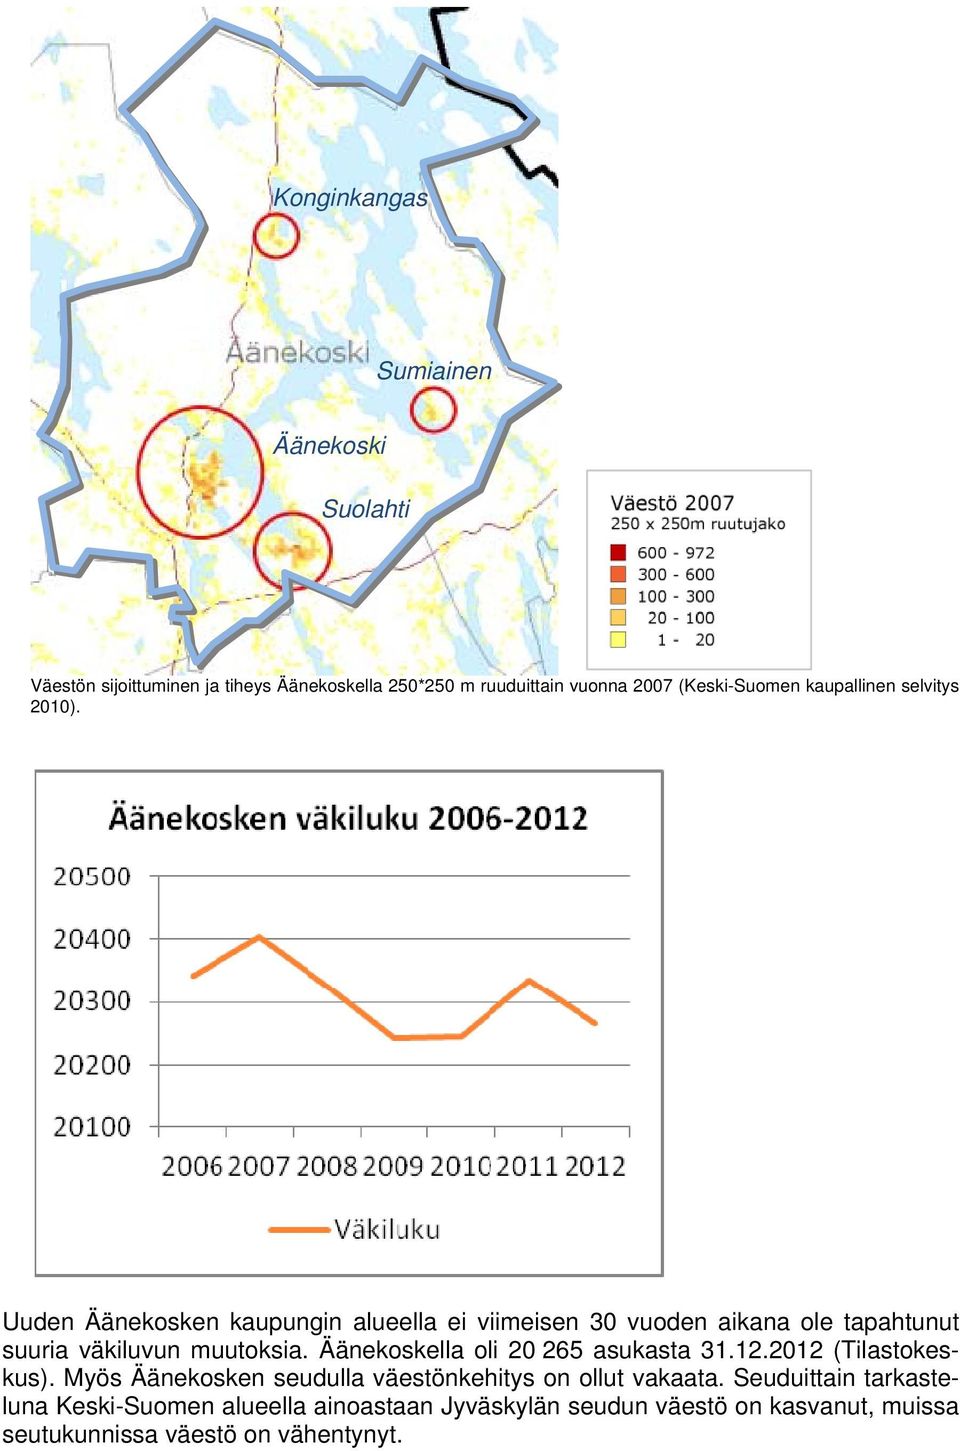 Uuden Äänekosken kaupungin alueella ei viimeisen 30 vuoden aikana ole tapahtunut suuria väkiluvun muutoksia.